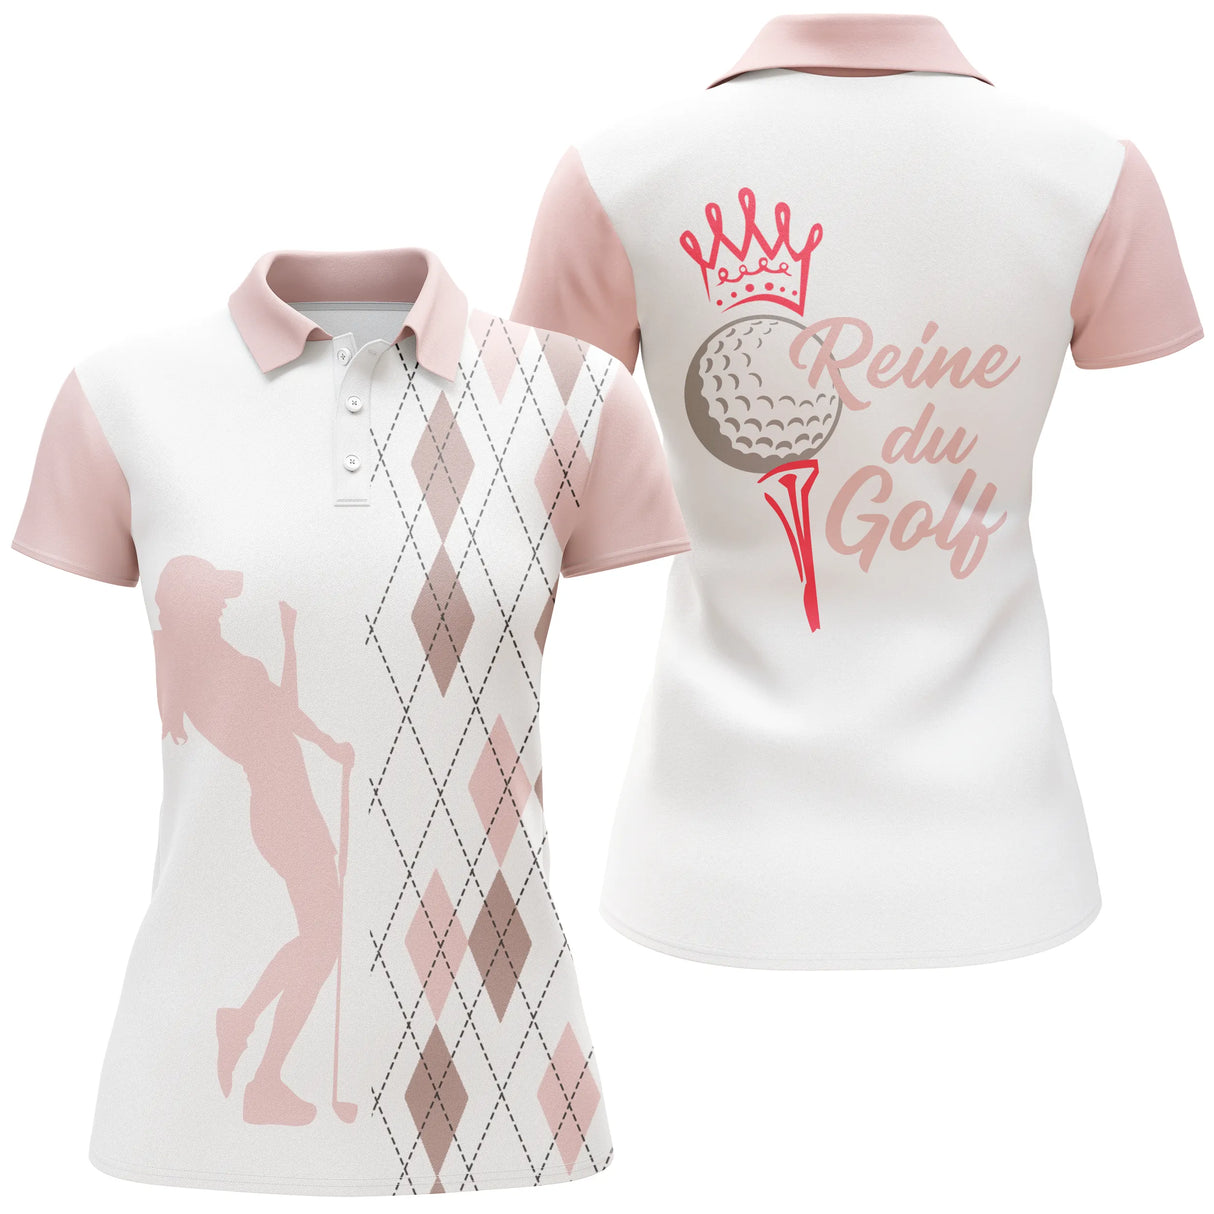 Polo Reine du Golf, Vêtement de Sport Femme, Cadeau Humour